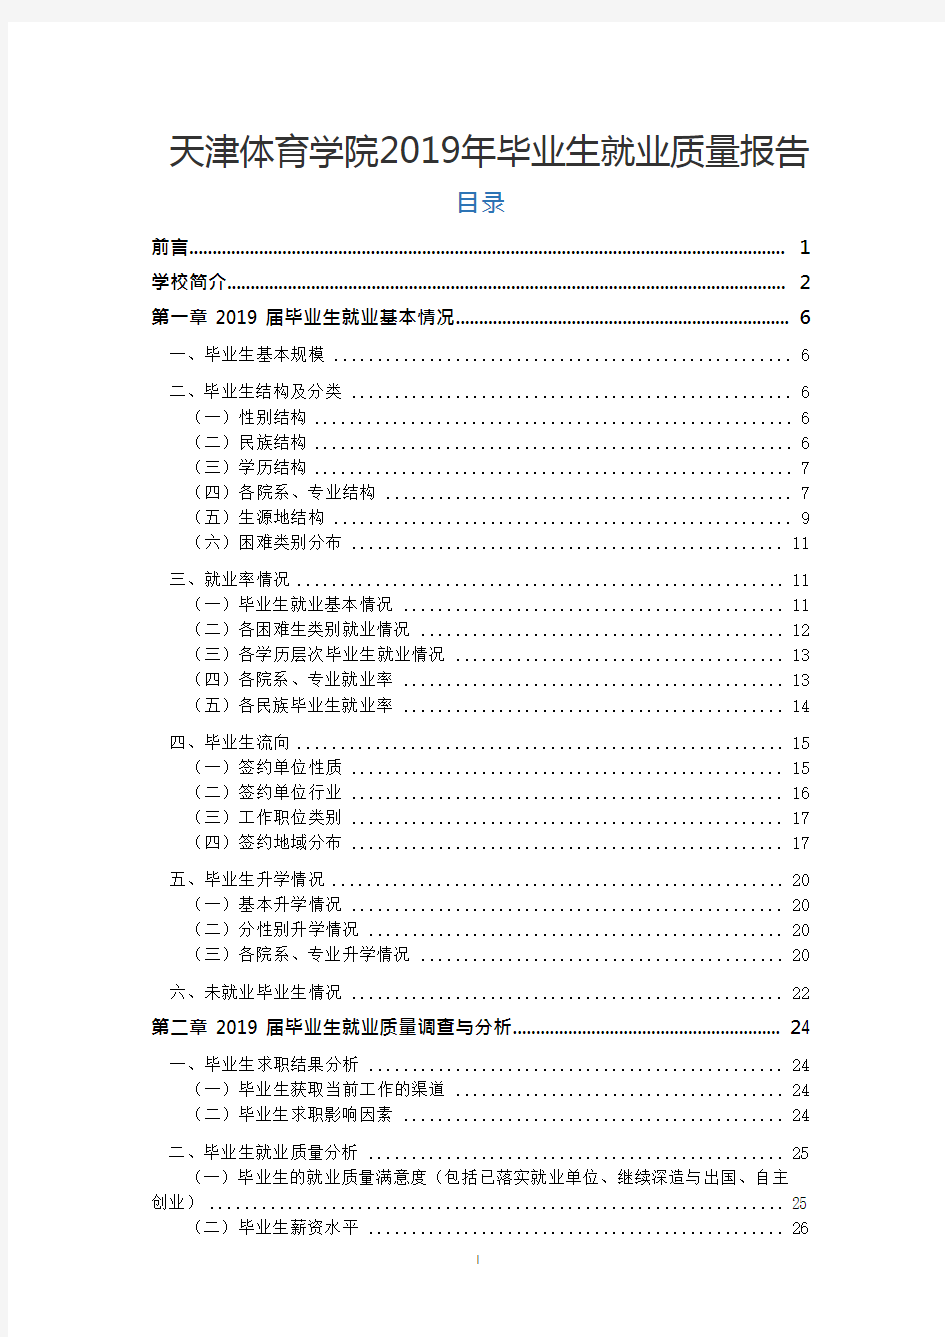 天津体育学院2019年毕业生就业质量报告